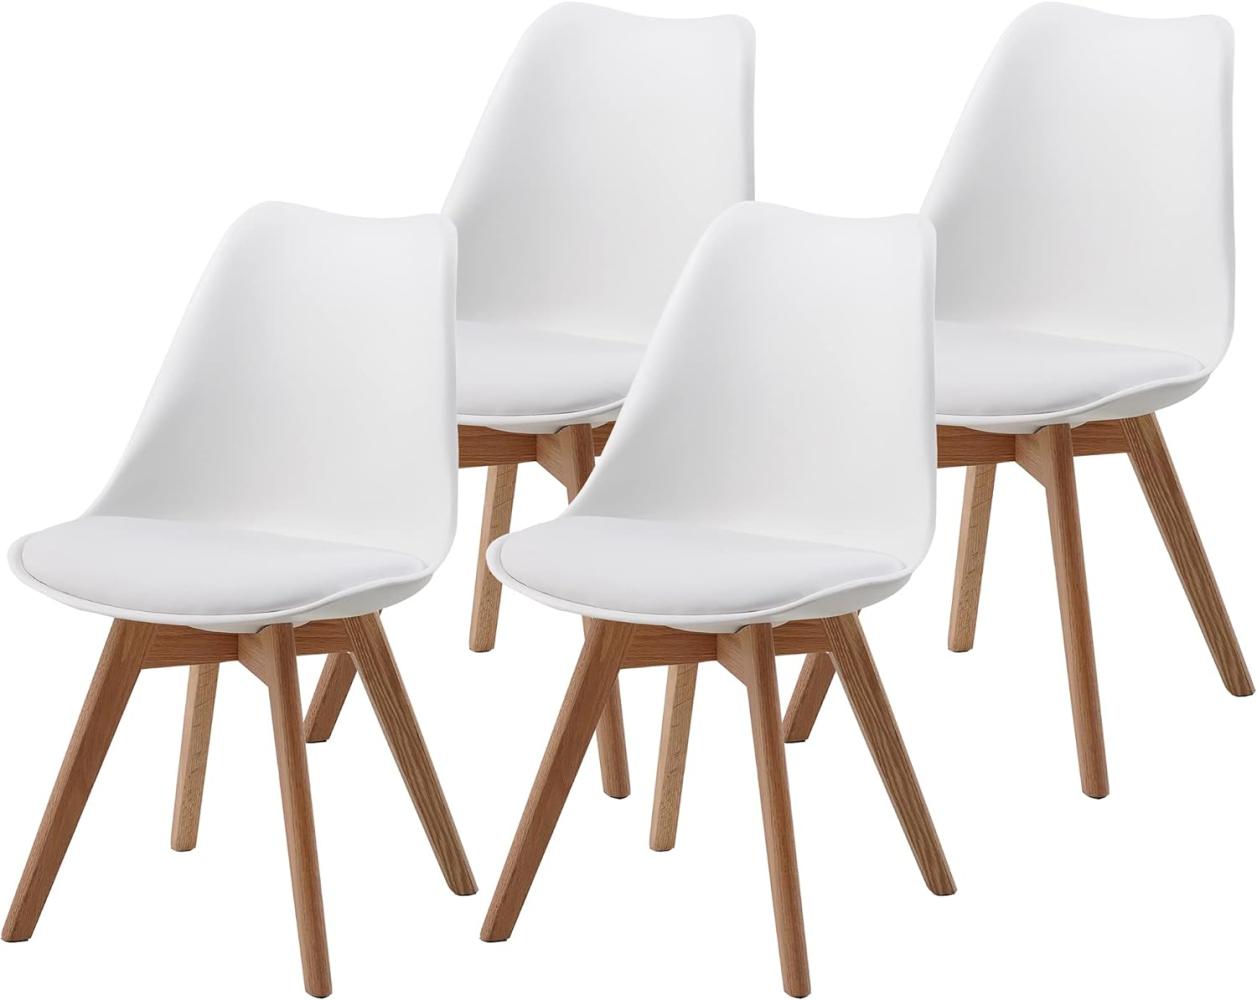 ALBATROS Esszimmerstühle AARHUS 4-er Set, Weiss mit Beinen aus Massiv-Holz, Eiche, skandinavisches Retro-Design Bild 1